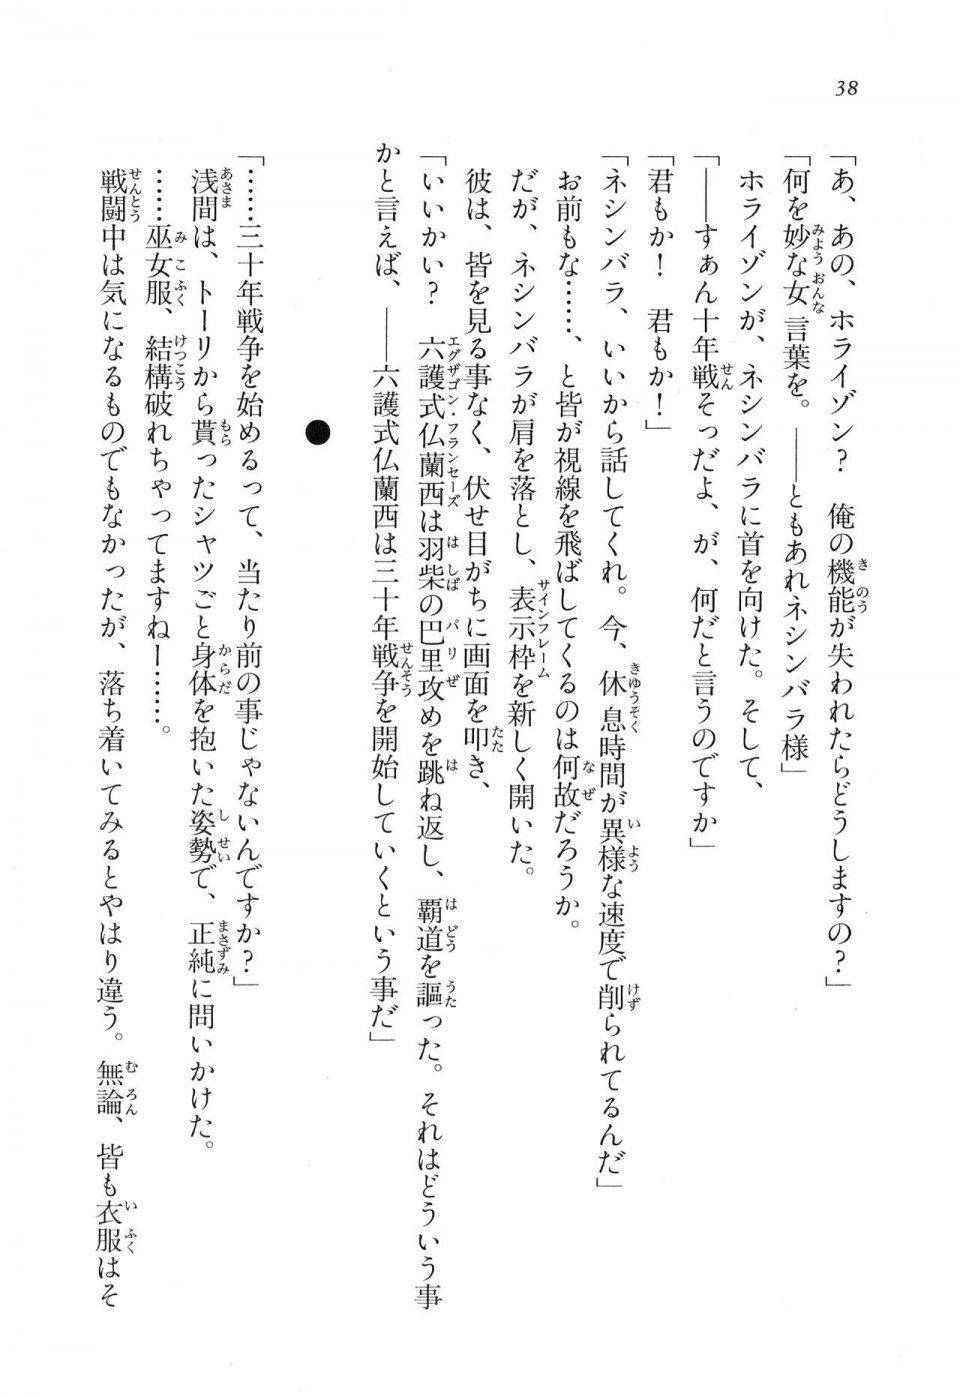 Kyoukai Senjou no Horizon LN Vol 16(7A) - Photo #38